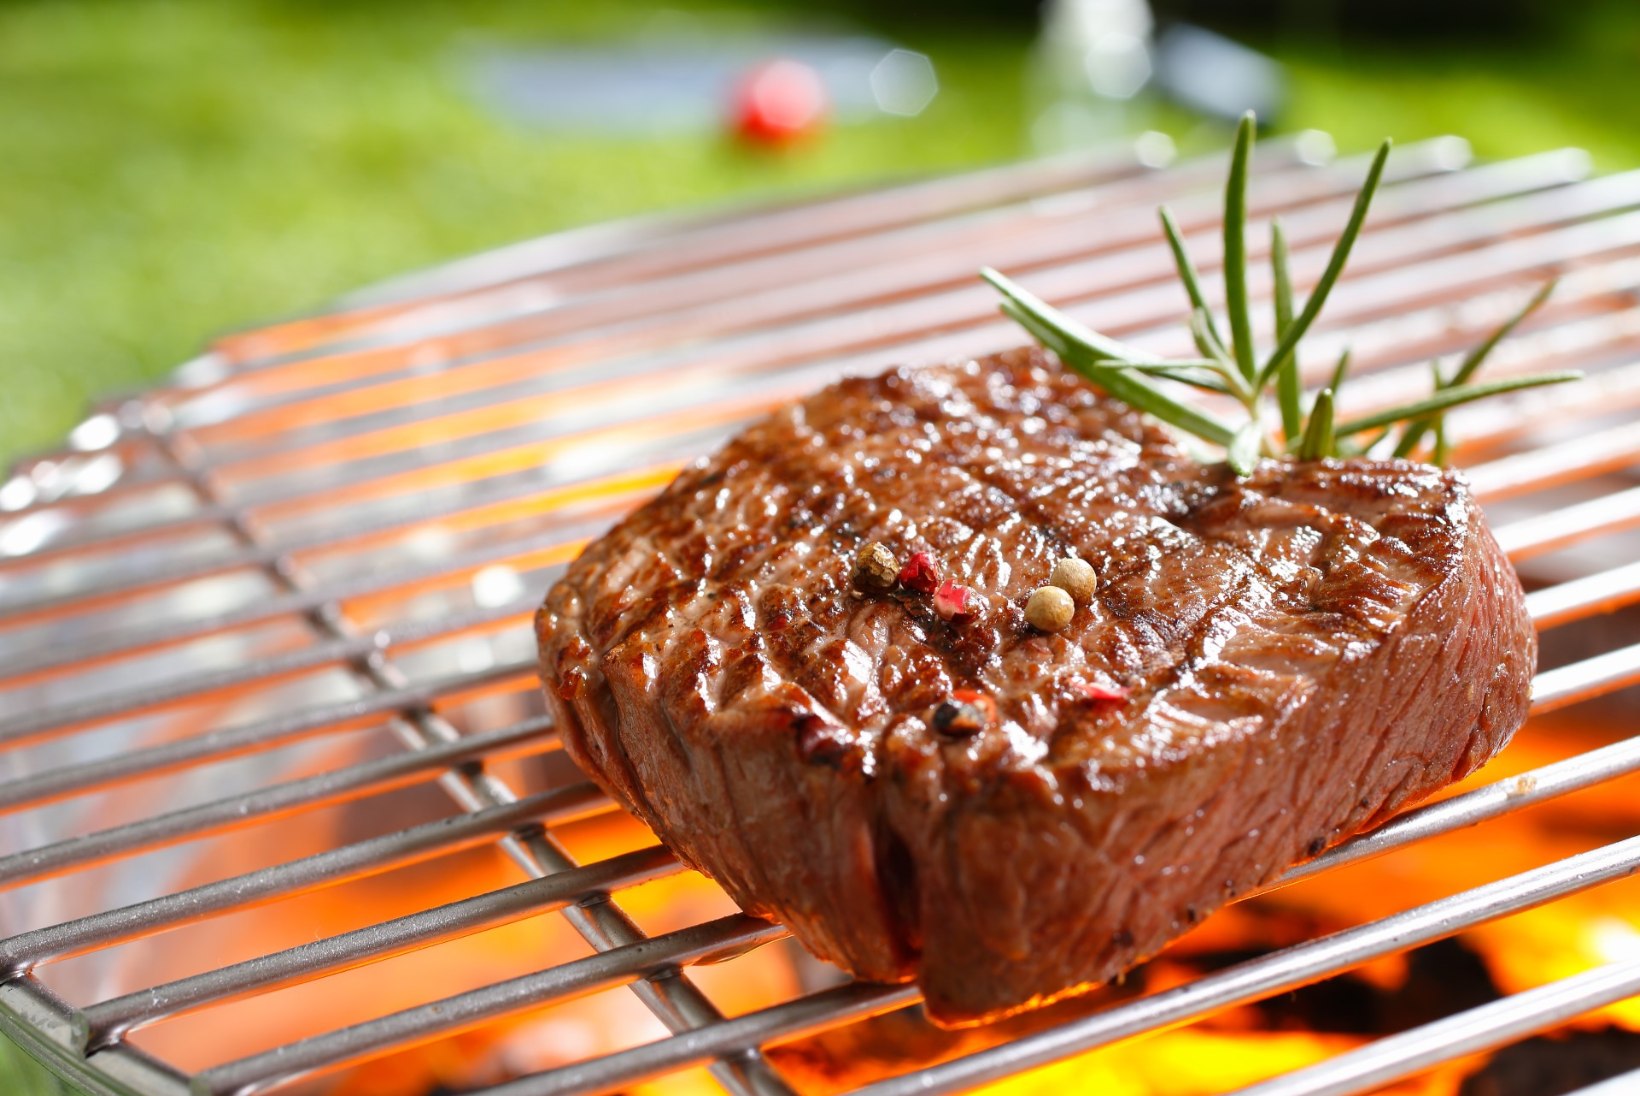 GRILLIHOOAEG: milline grill-liha on musklile kõige mõjusam?